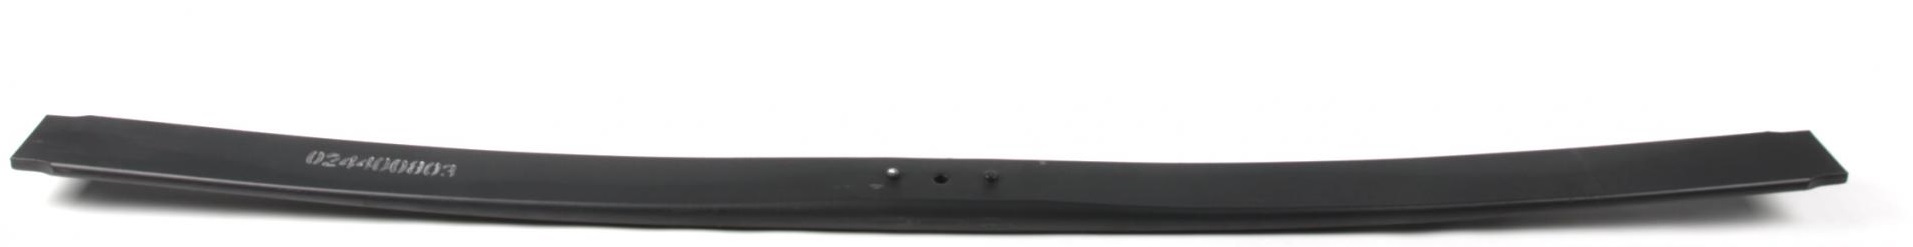 Рессора задняя (3-й лист) MB Sprinter 410-416/VW LT 46 (70x665x665) 27mm (без резинок)